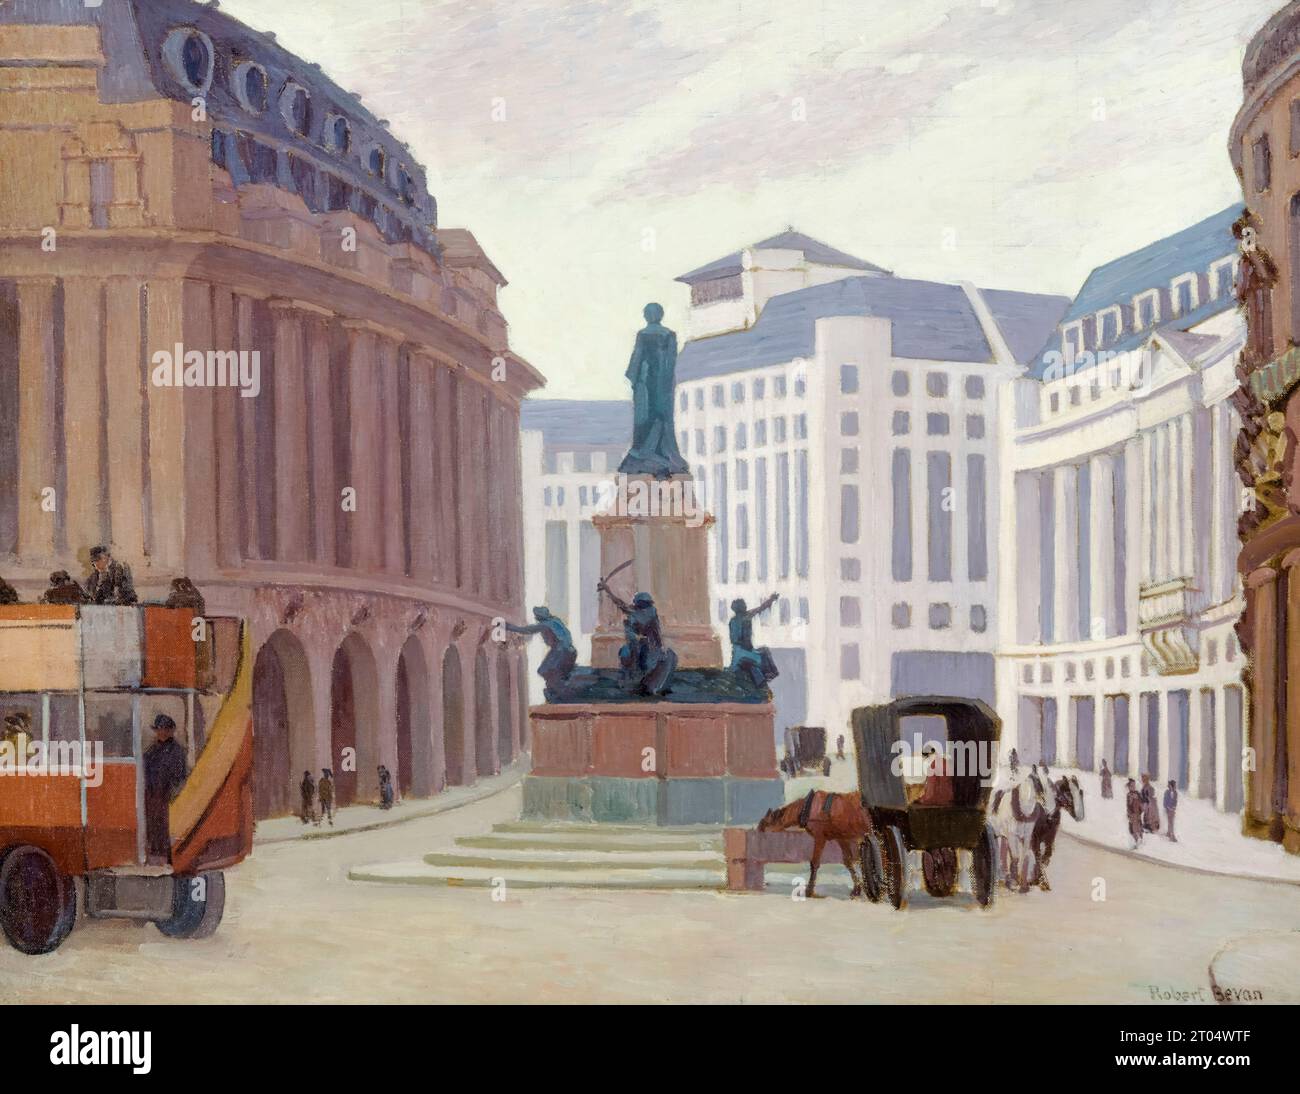 Aldwych (Londres), peinture à l'huile sur toile de Robert Bevan, 1924 Banque D'Images